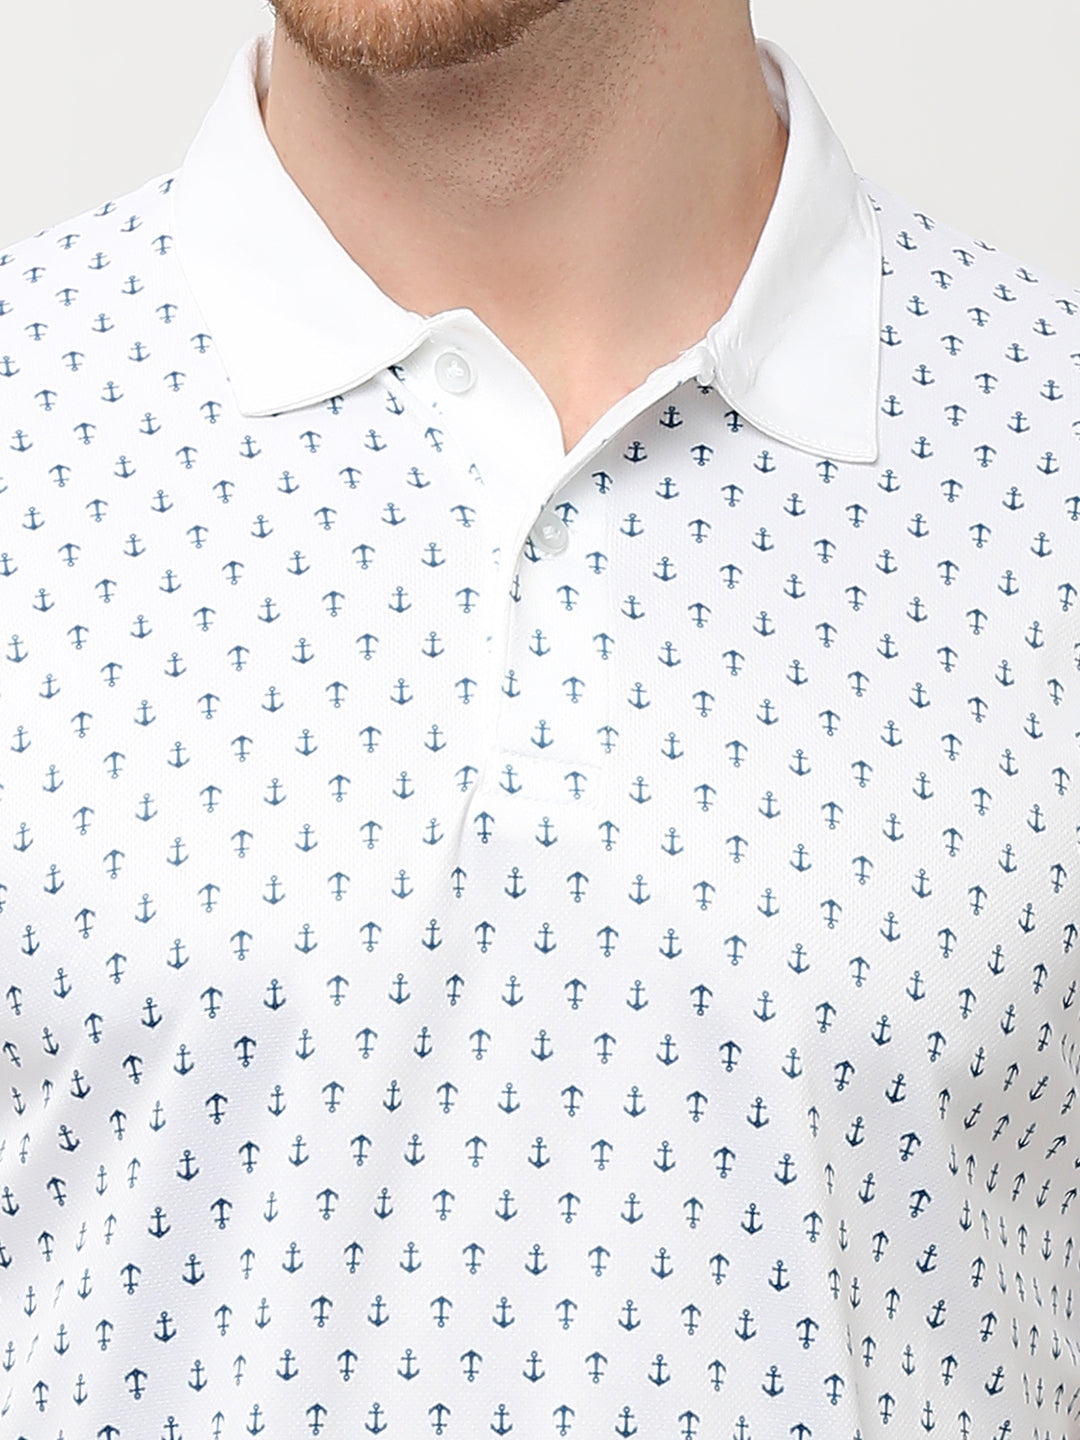 Polo T-shirt (Anchor Print) - White